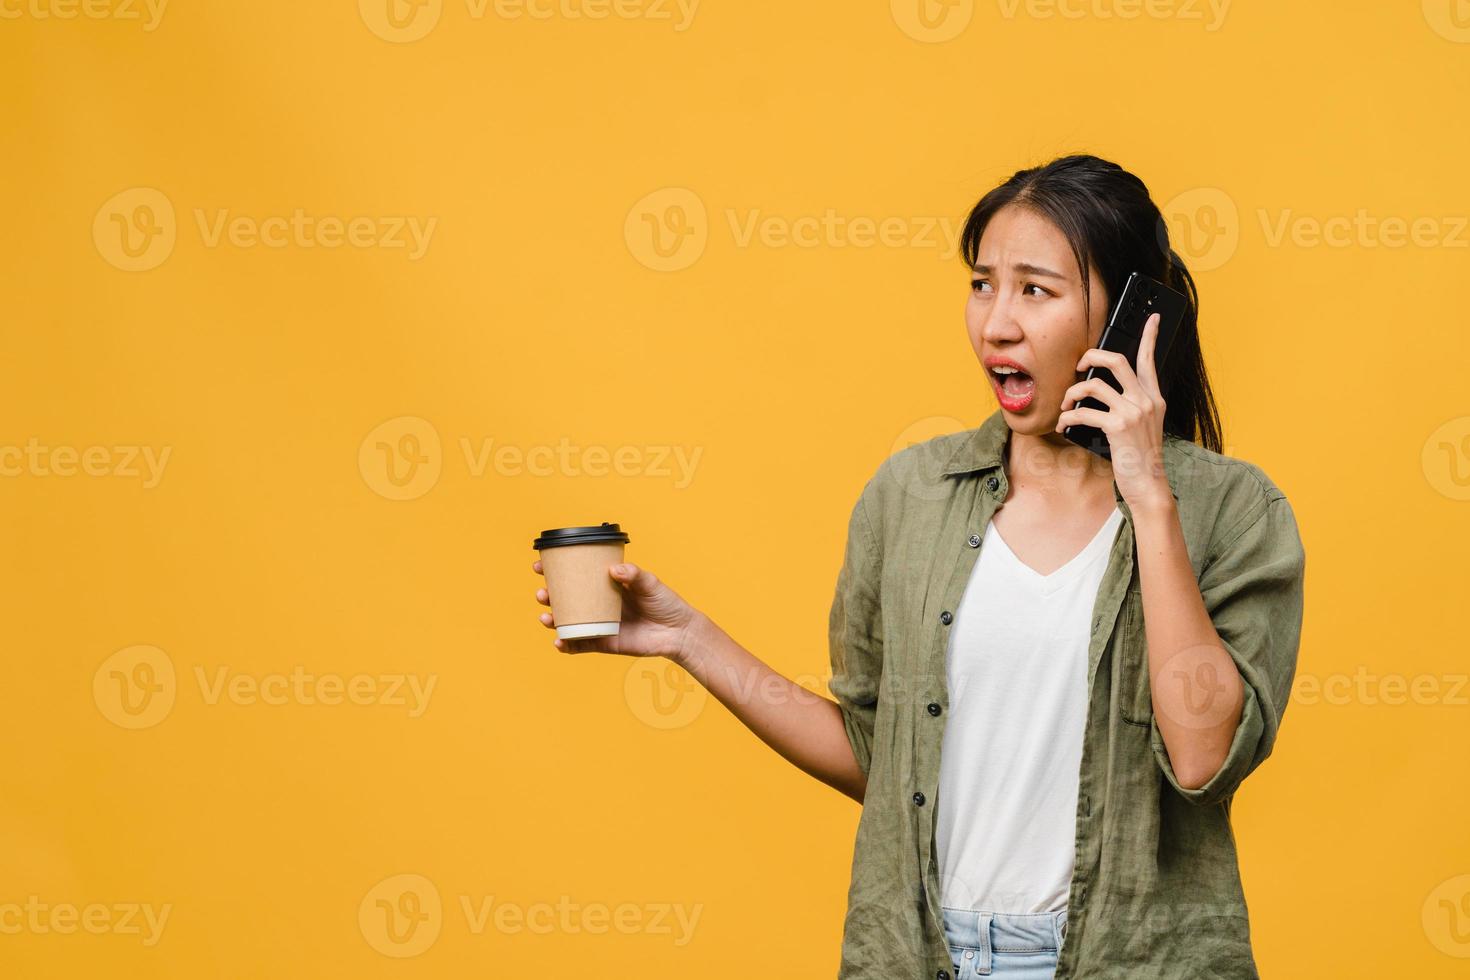 une jeune femme asiatique parle par téléphone et tient une tasse de café avec une expression négative, des cris excités, pleure émotionnellement en colère dans un tissu décontracté et se tient isolée sur fond jaune. concept d'expression faciale. photo